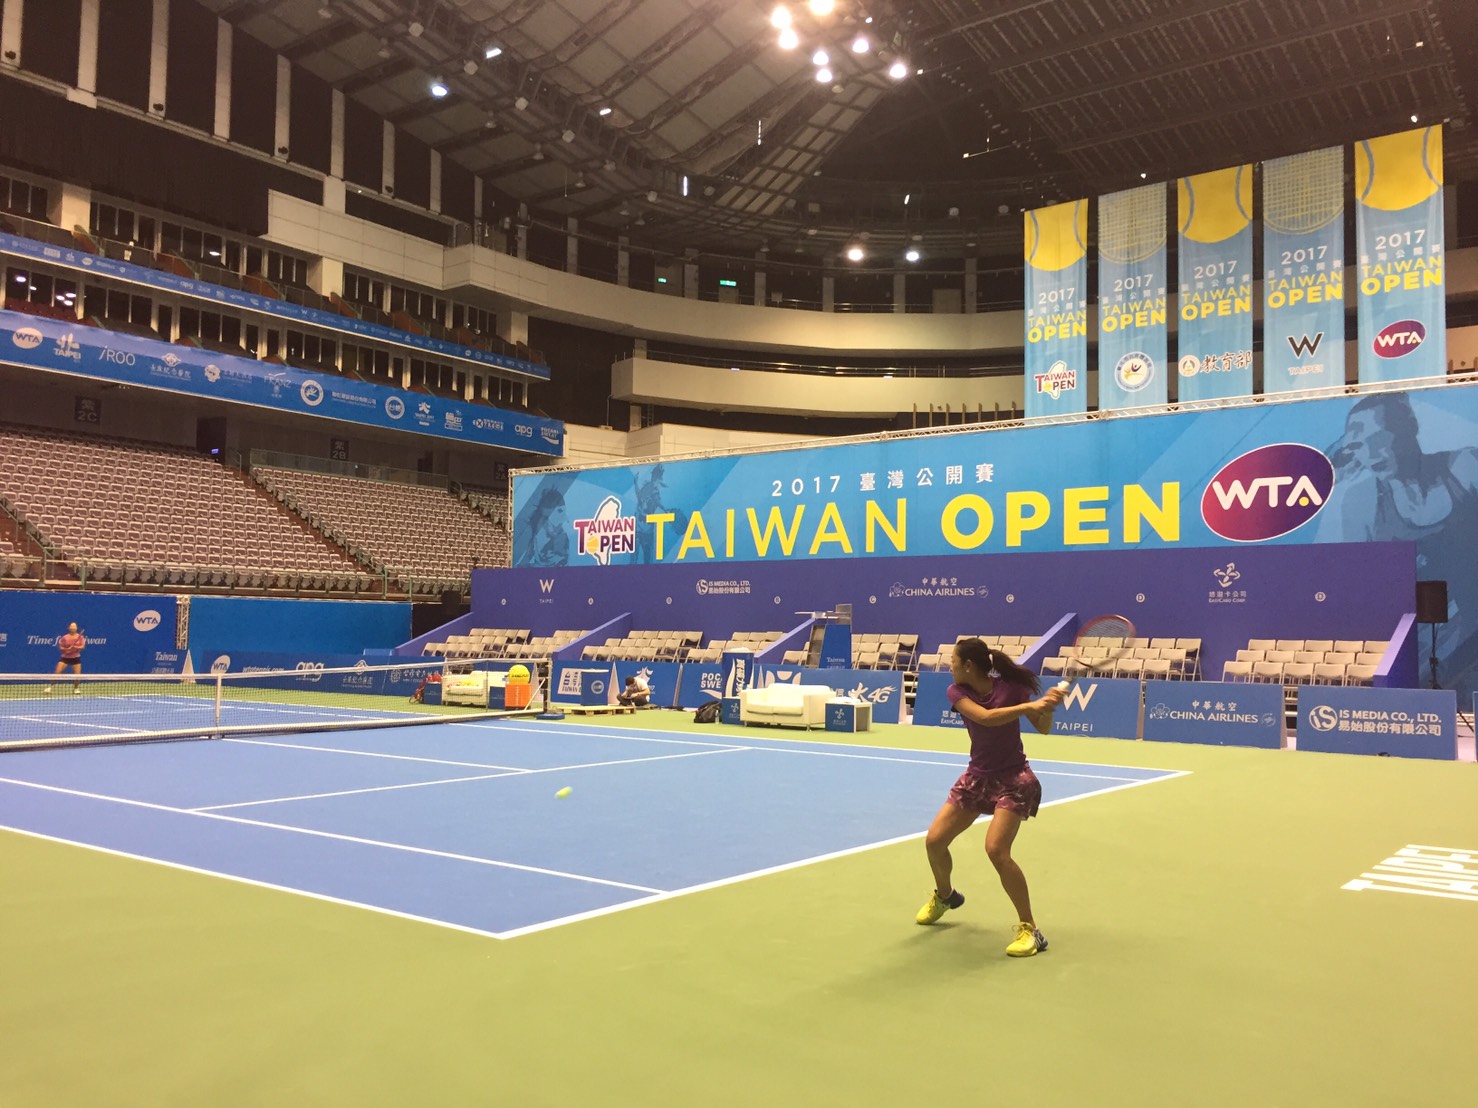 漂亮的中央球場。台灣公開賽大會提供